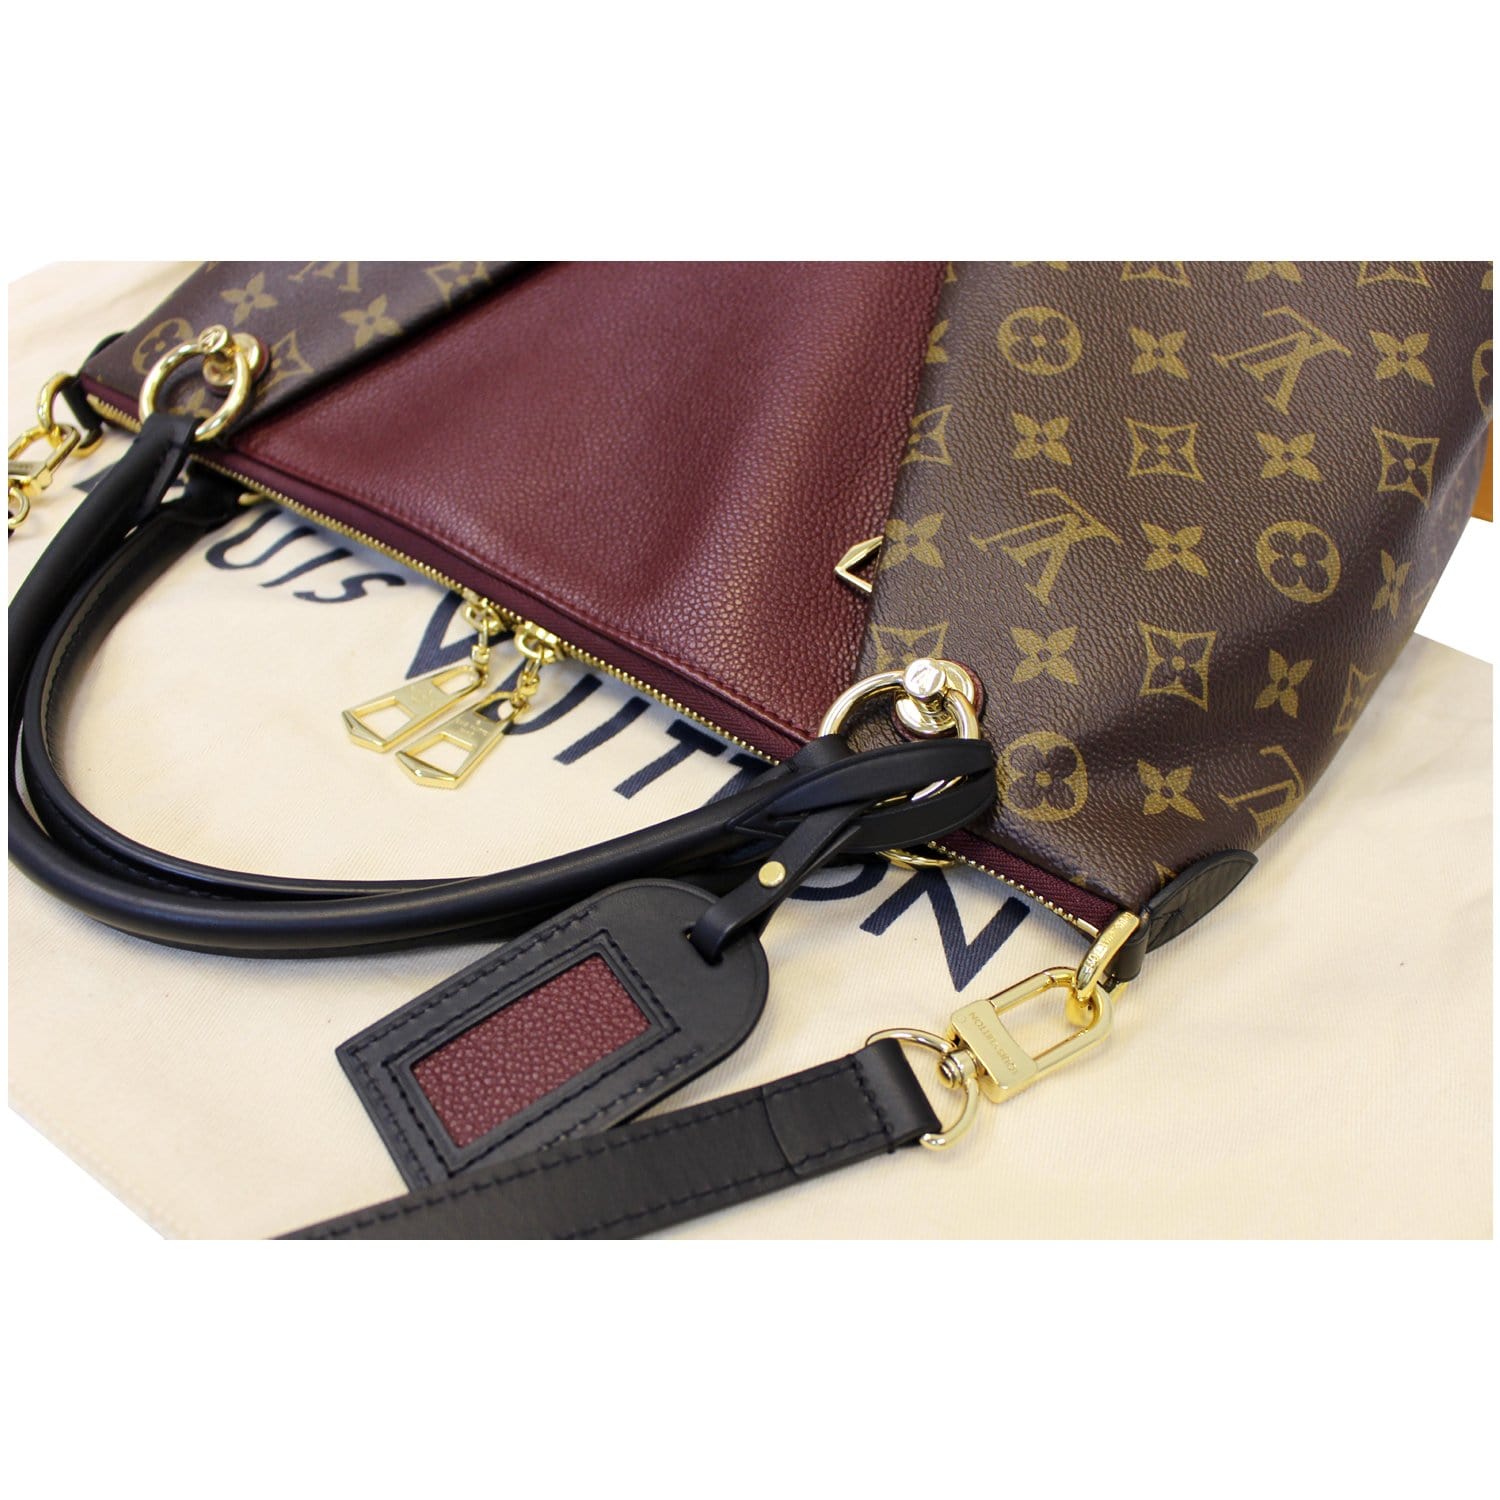 Authenticated used Louis Vuitton Monogram Tuileries Tote M43439 Women's Handbag,Shoulder Bag Bordeaux,Monogram,Navy, Adult Unisex, Size: (HxWxD): 23cm